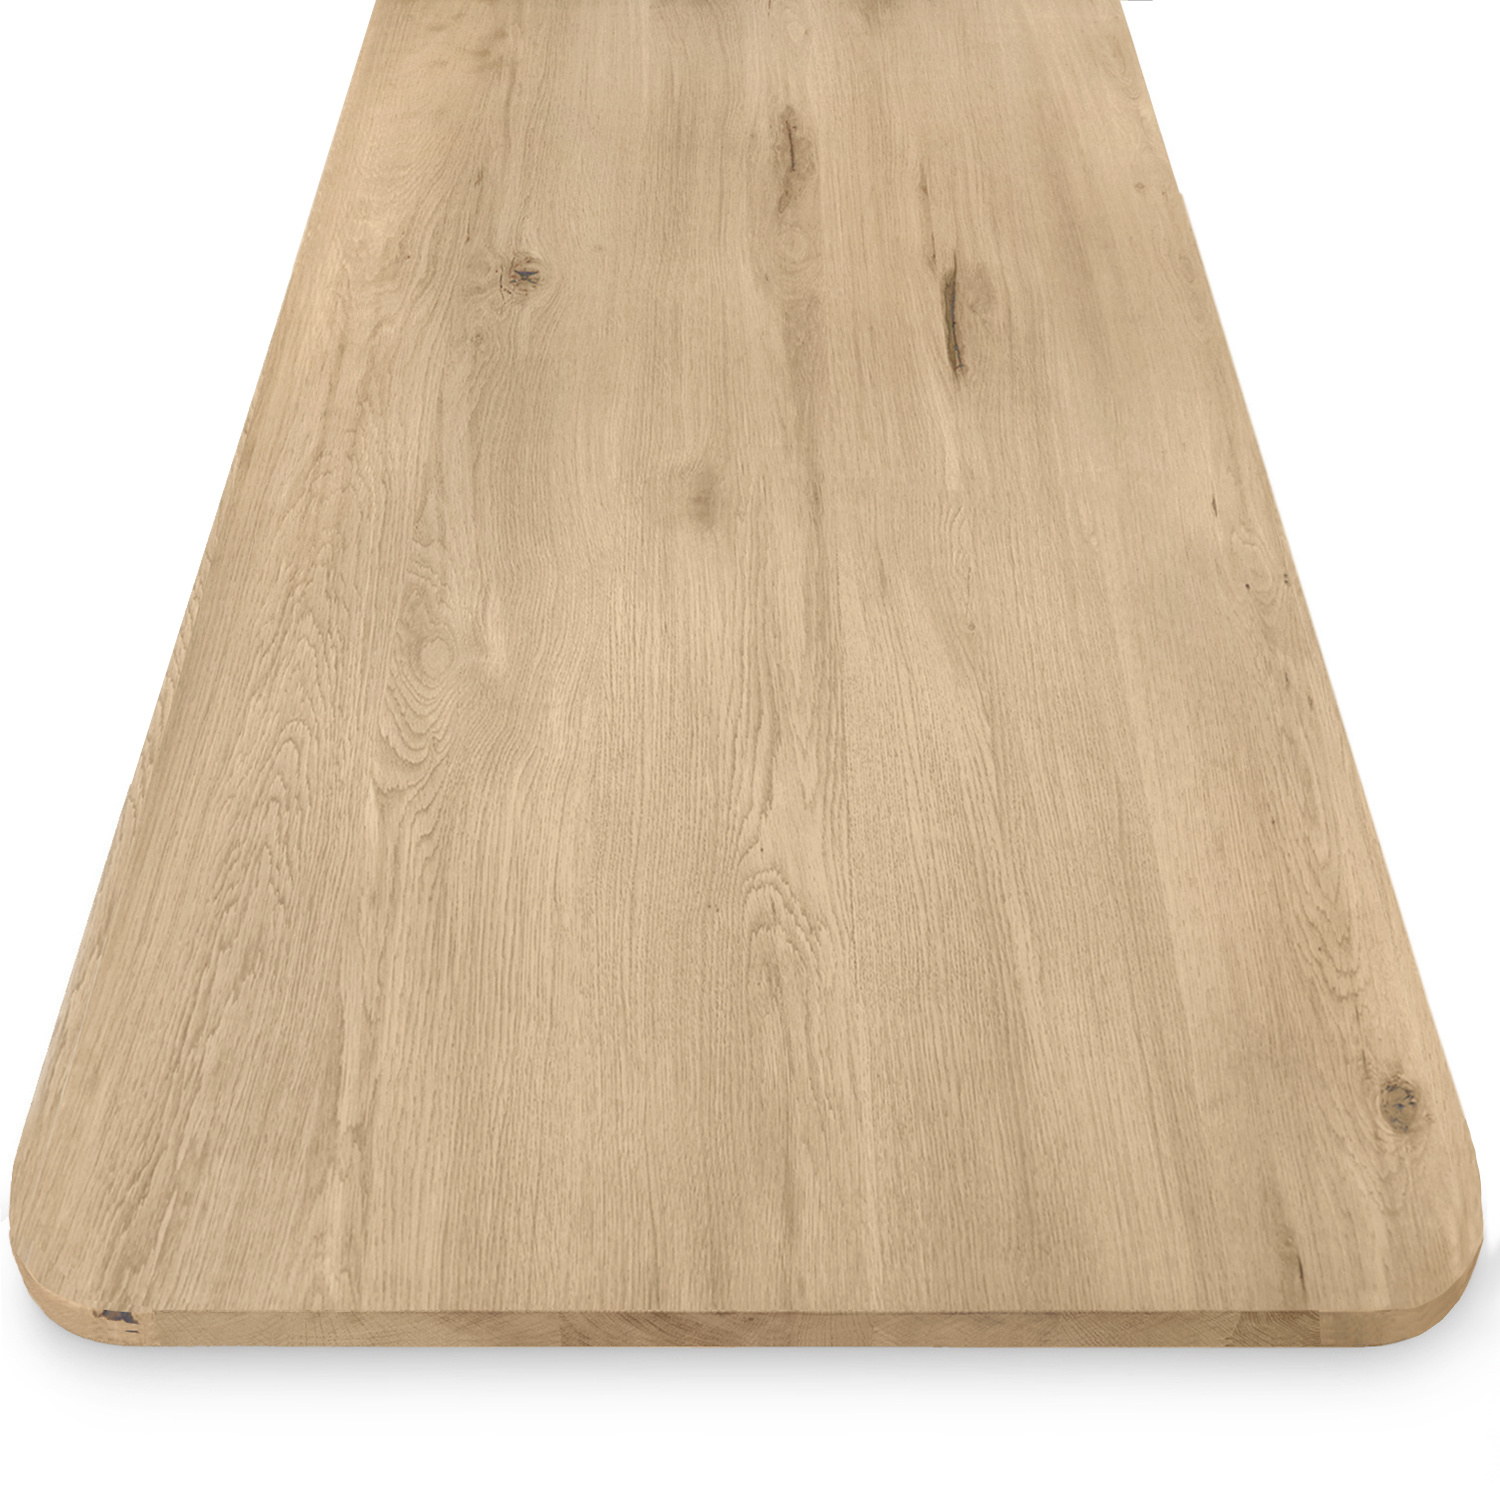  Eiken tafelblad met ronde hoeken - 3 cm dik (1-laag) - Diverse afmetingen - extra rustiek Europees eikenhout - met extra brede lamellen (circa 14-20 cm) - verlijmd kd 8-12%